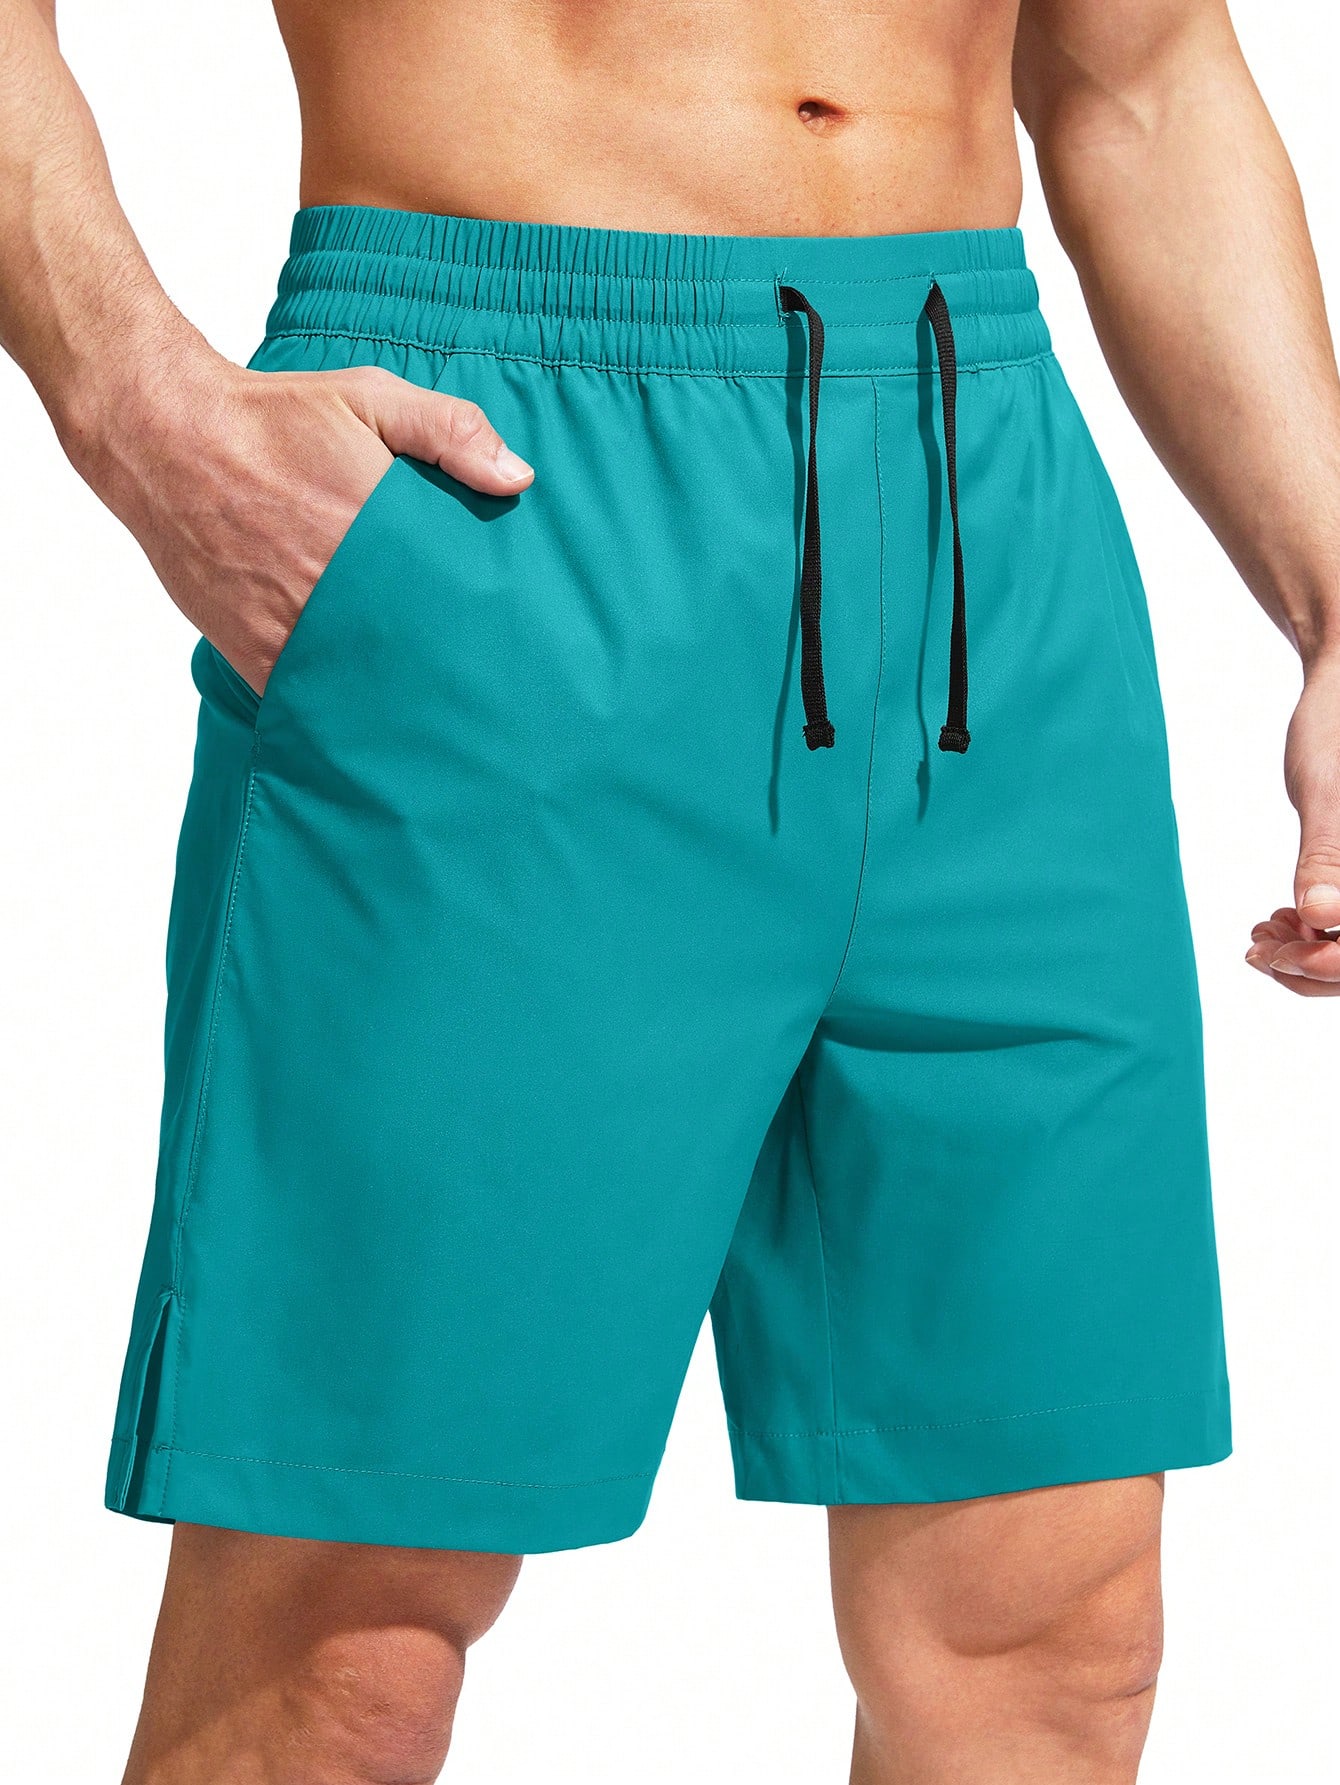 G Gradual G Gradual Мужские плавки Быстросохнущий купальный костюм Пляжные шорты для мужчин с карманами на молнии и сетчатой ​​подкладкой Серые шорты, мятно-зеленый фото